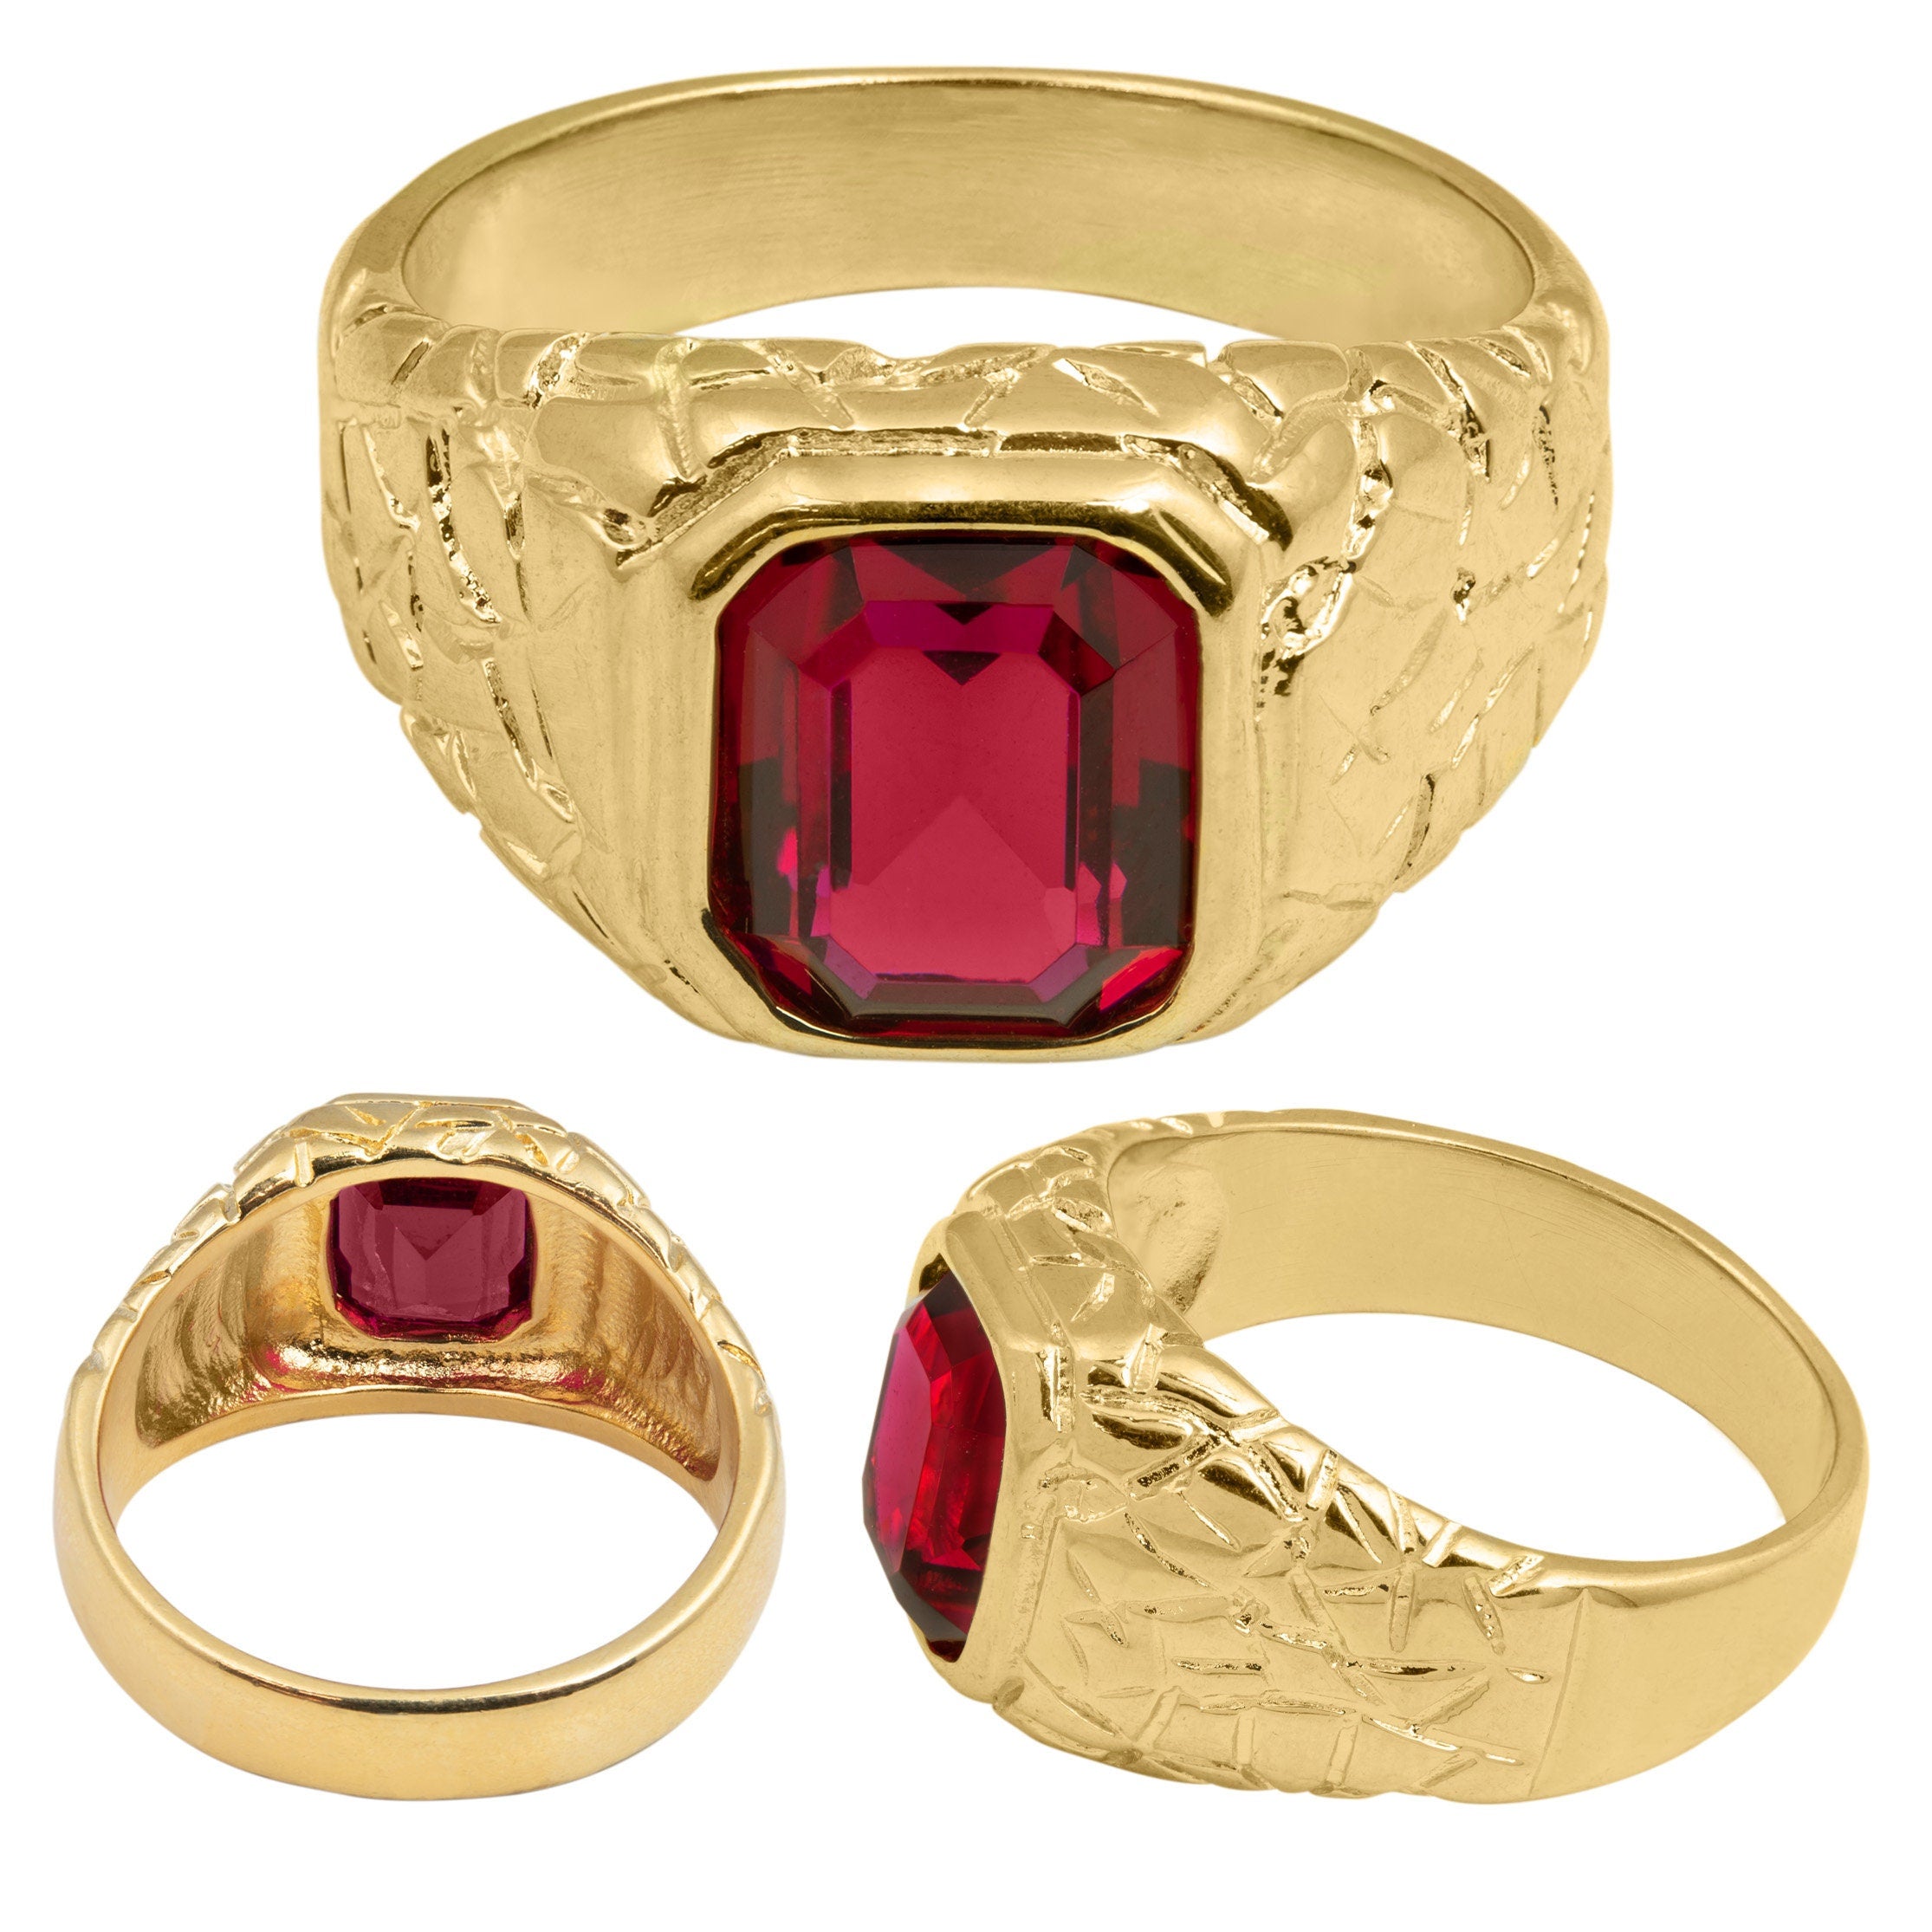 Buy Navrathna Antique Ring Online | H.k.s Jewellers - JewelFlix